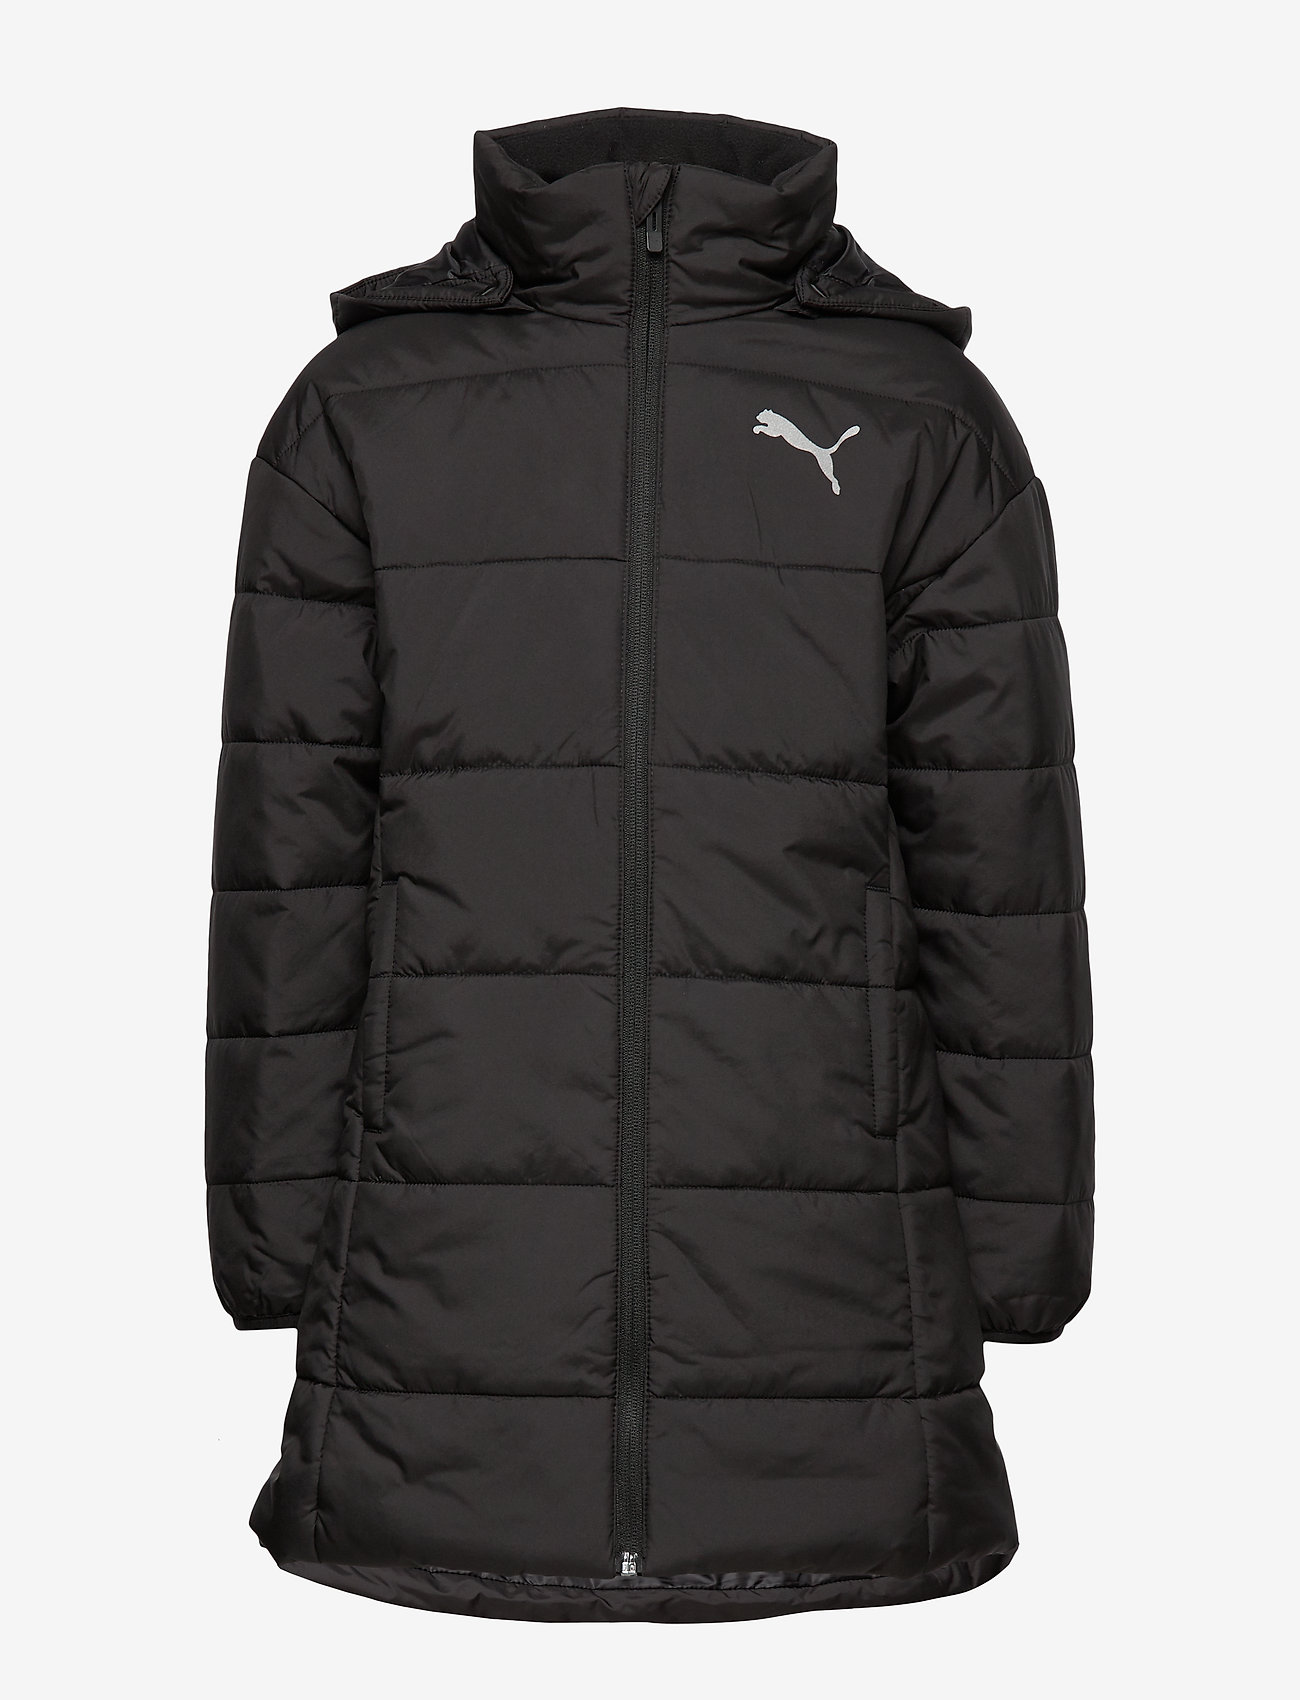 Style Padded Jacket G (Puma Black) (48 